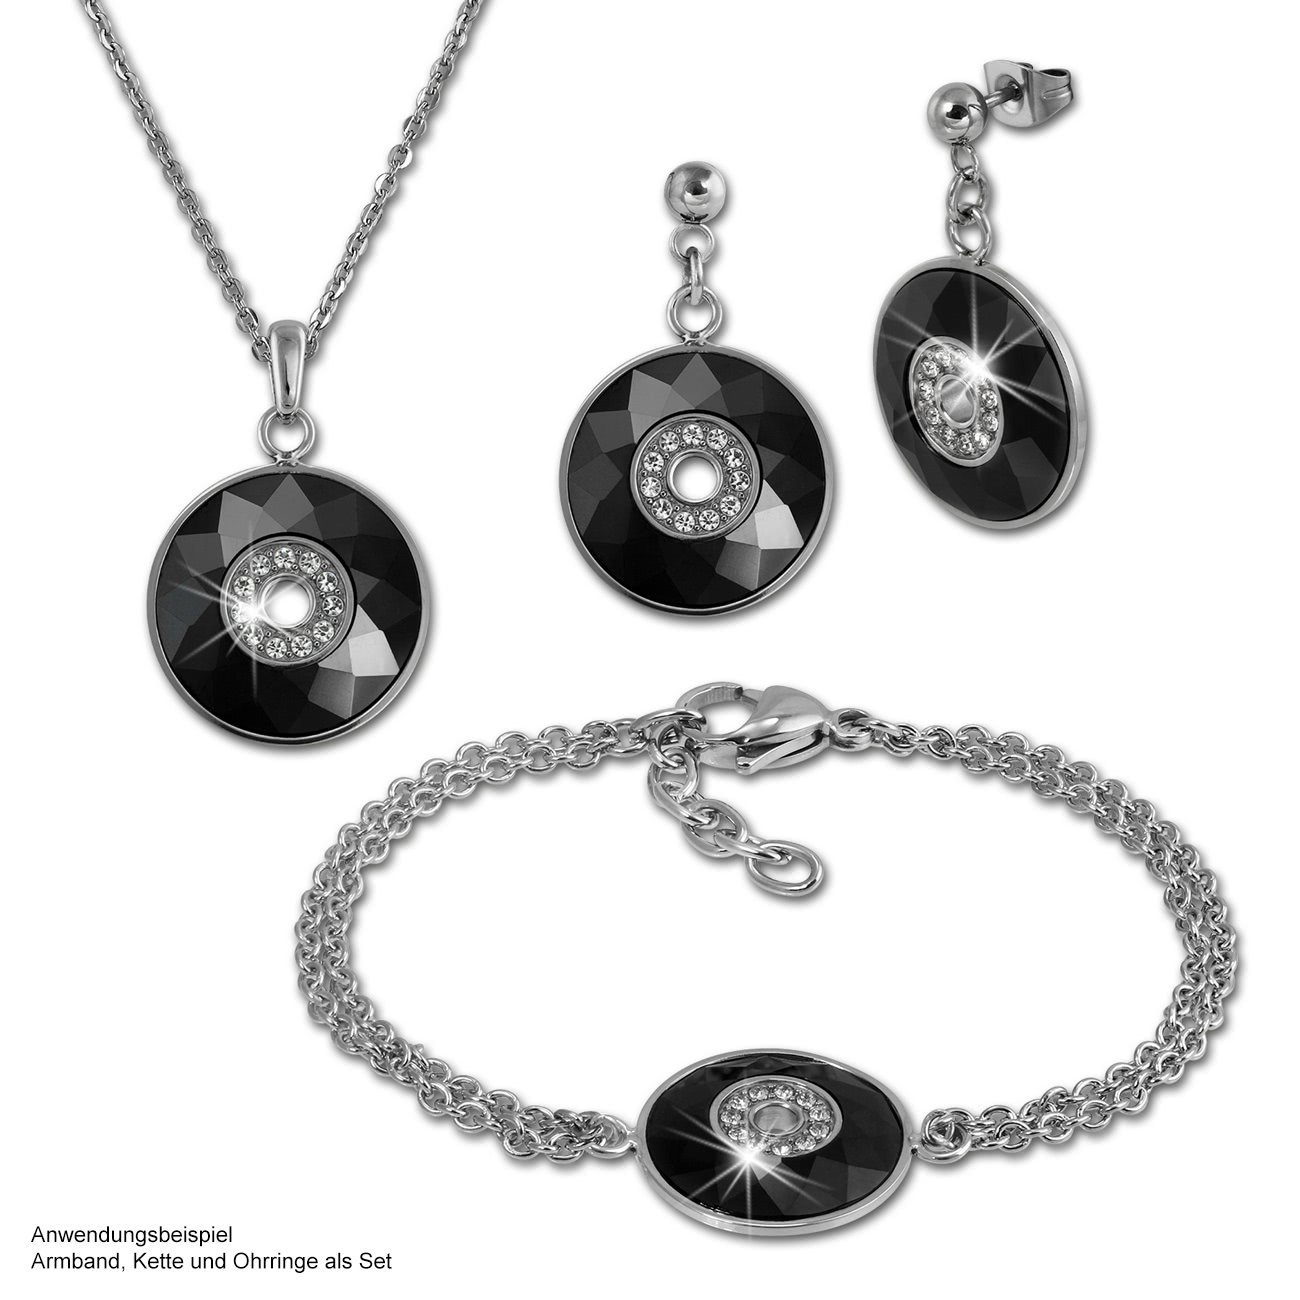 Amello Edelstahl (Rund) Damen Edelstahlkette Halsketten schwarz (Stainless silber aus Halskette Steel) (Halskette), Rund Amello